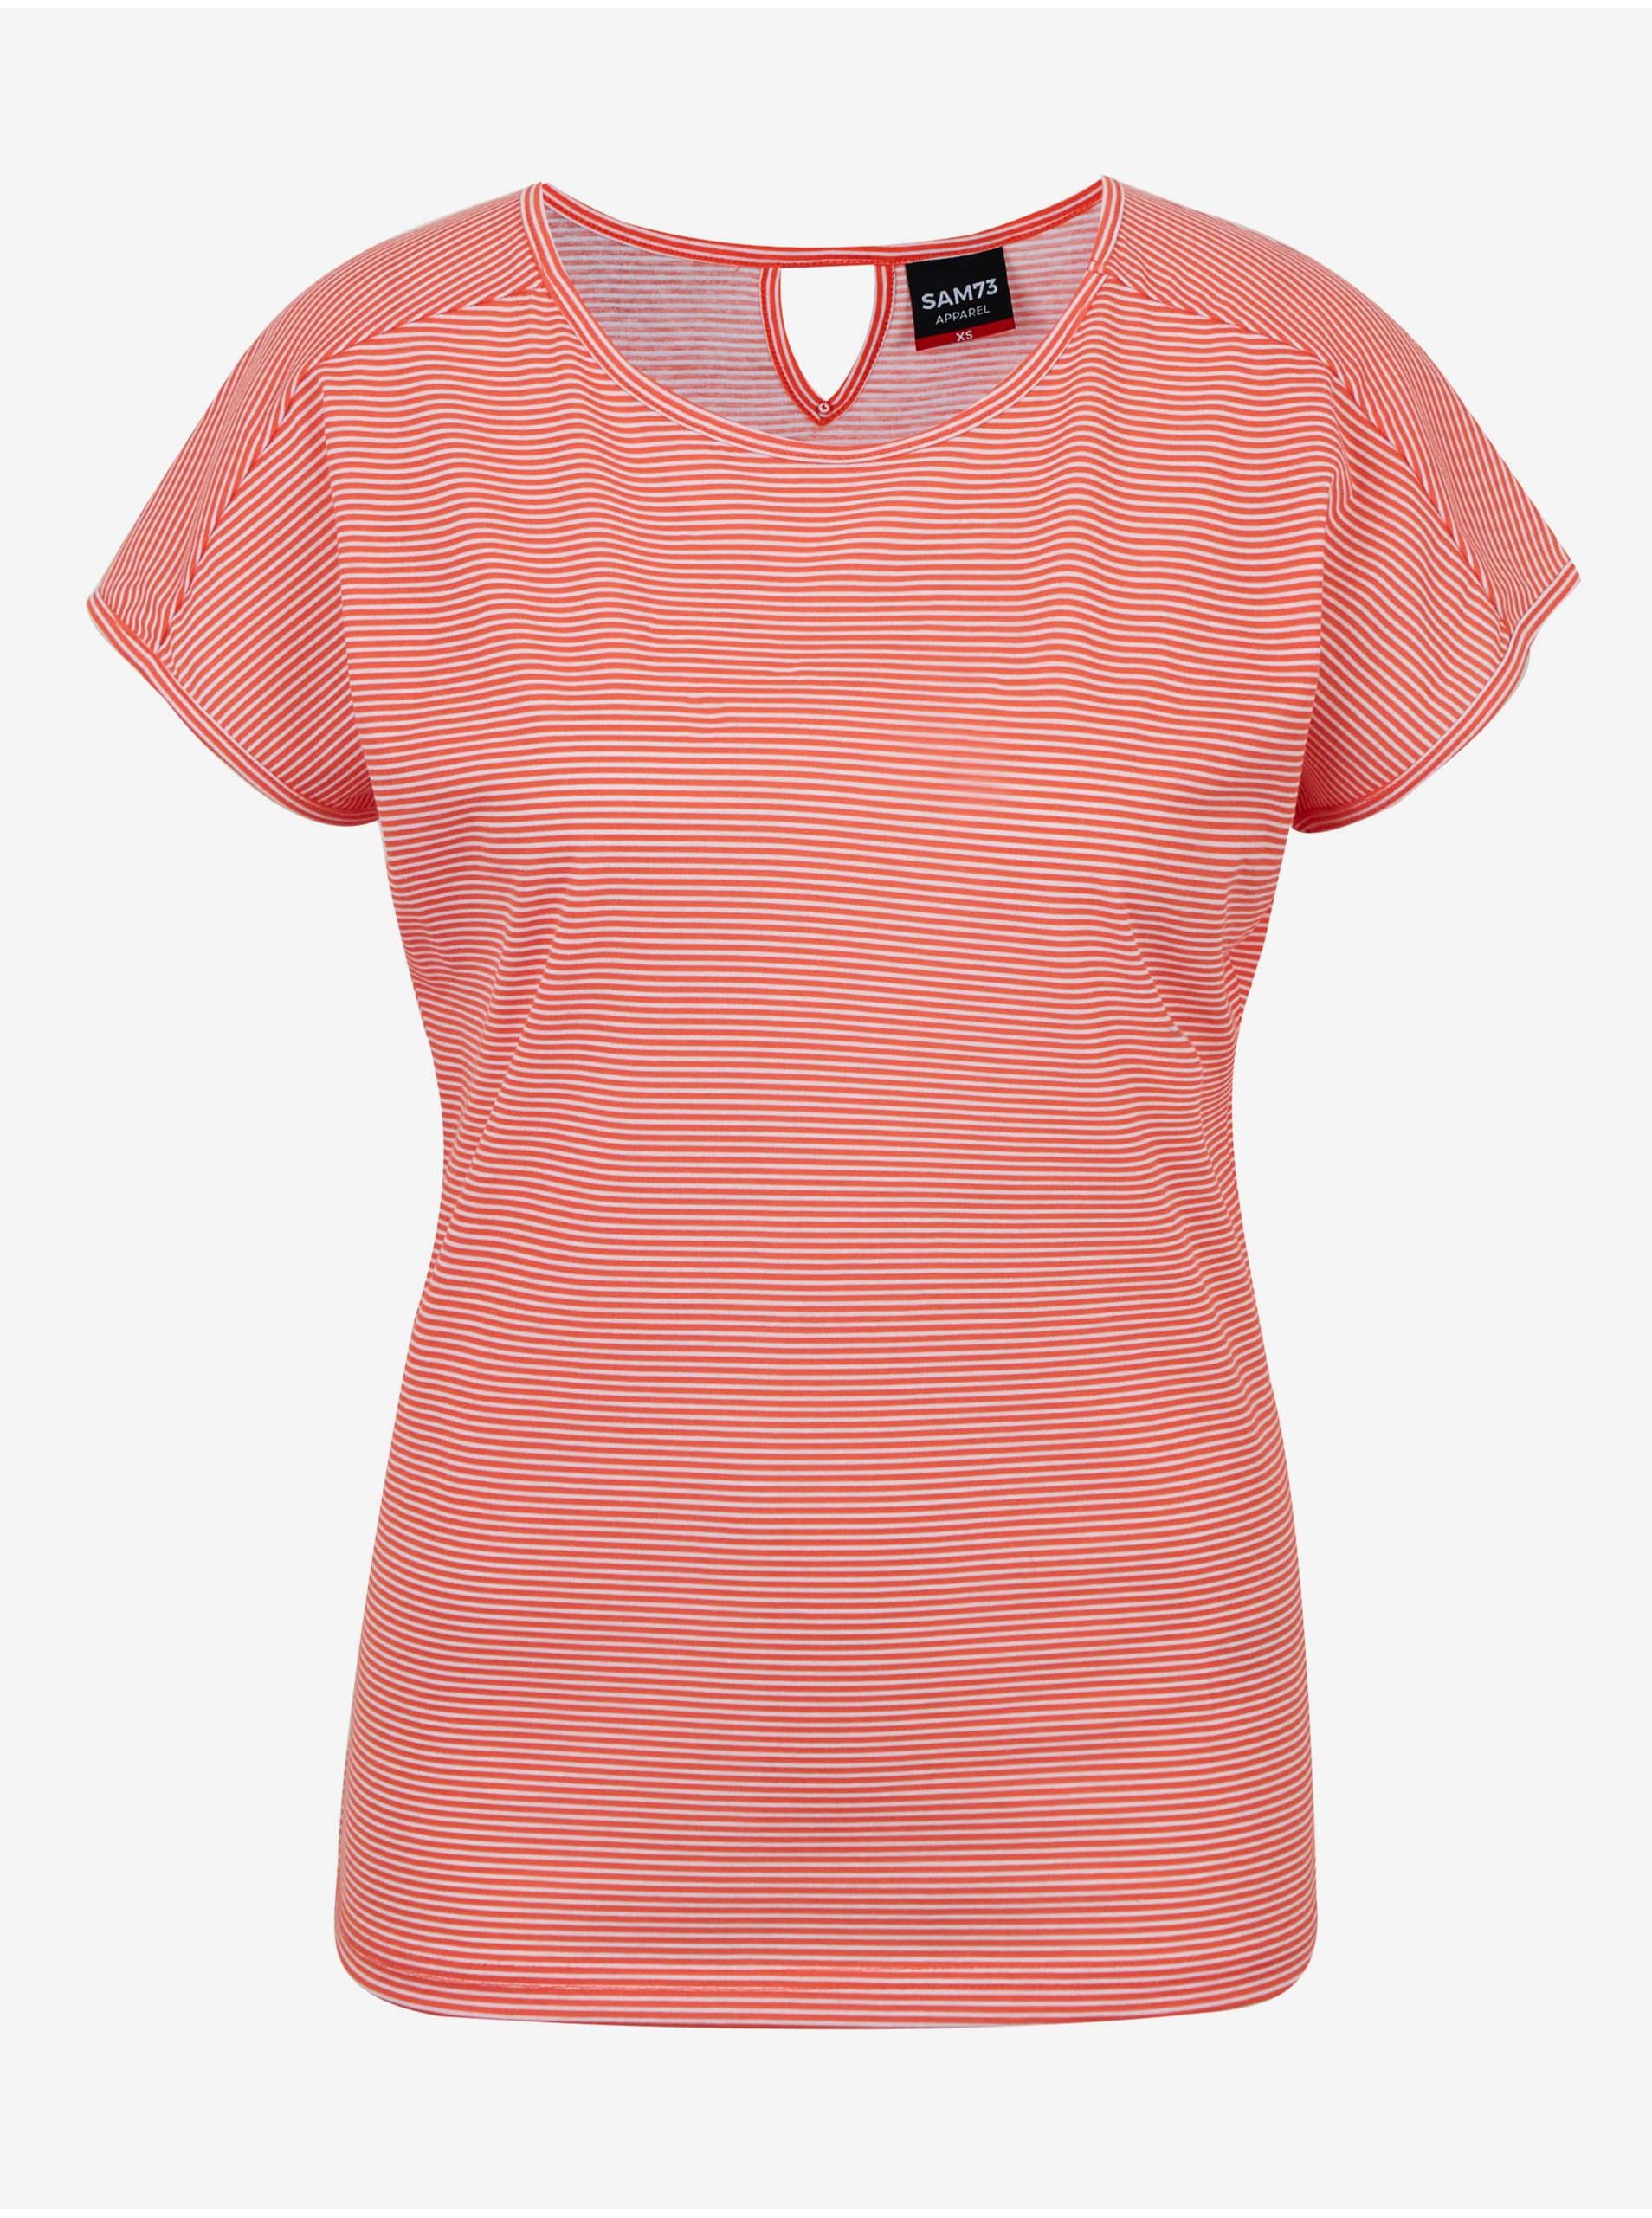 Lacno Oranžové dámske pruhované basic tričko SAM 73 Celeste